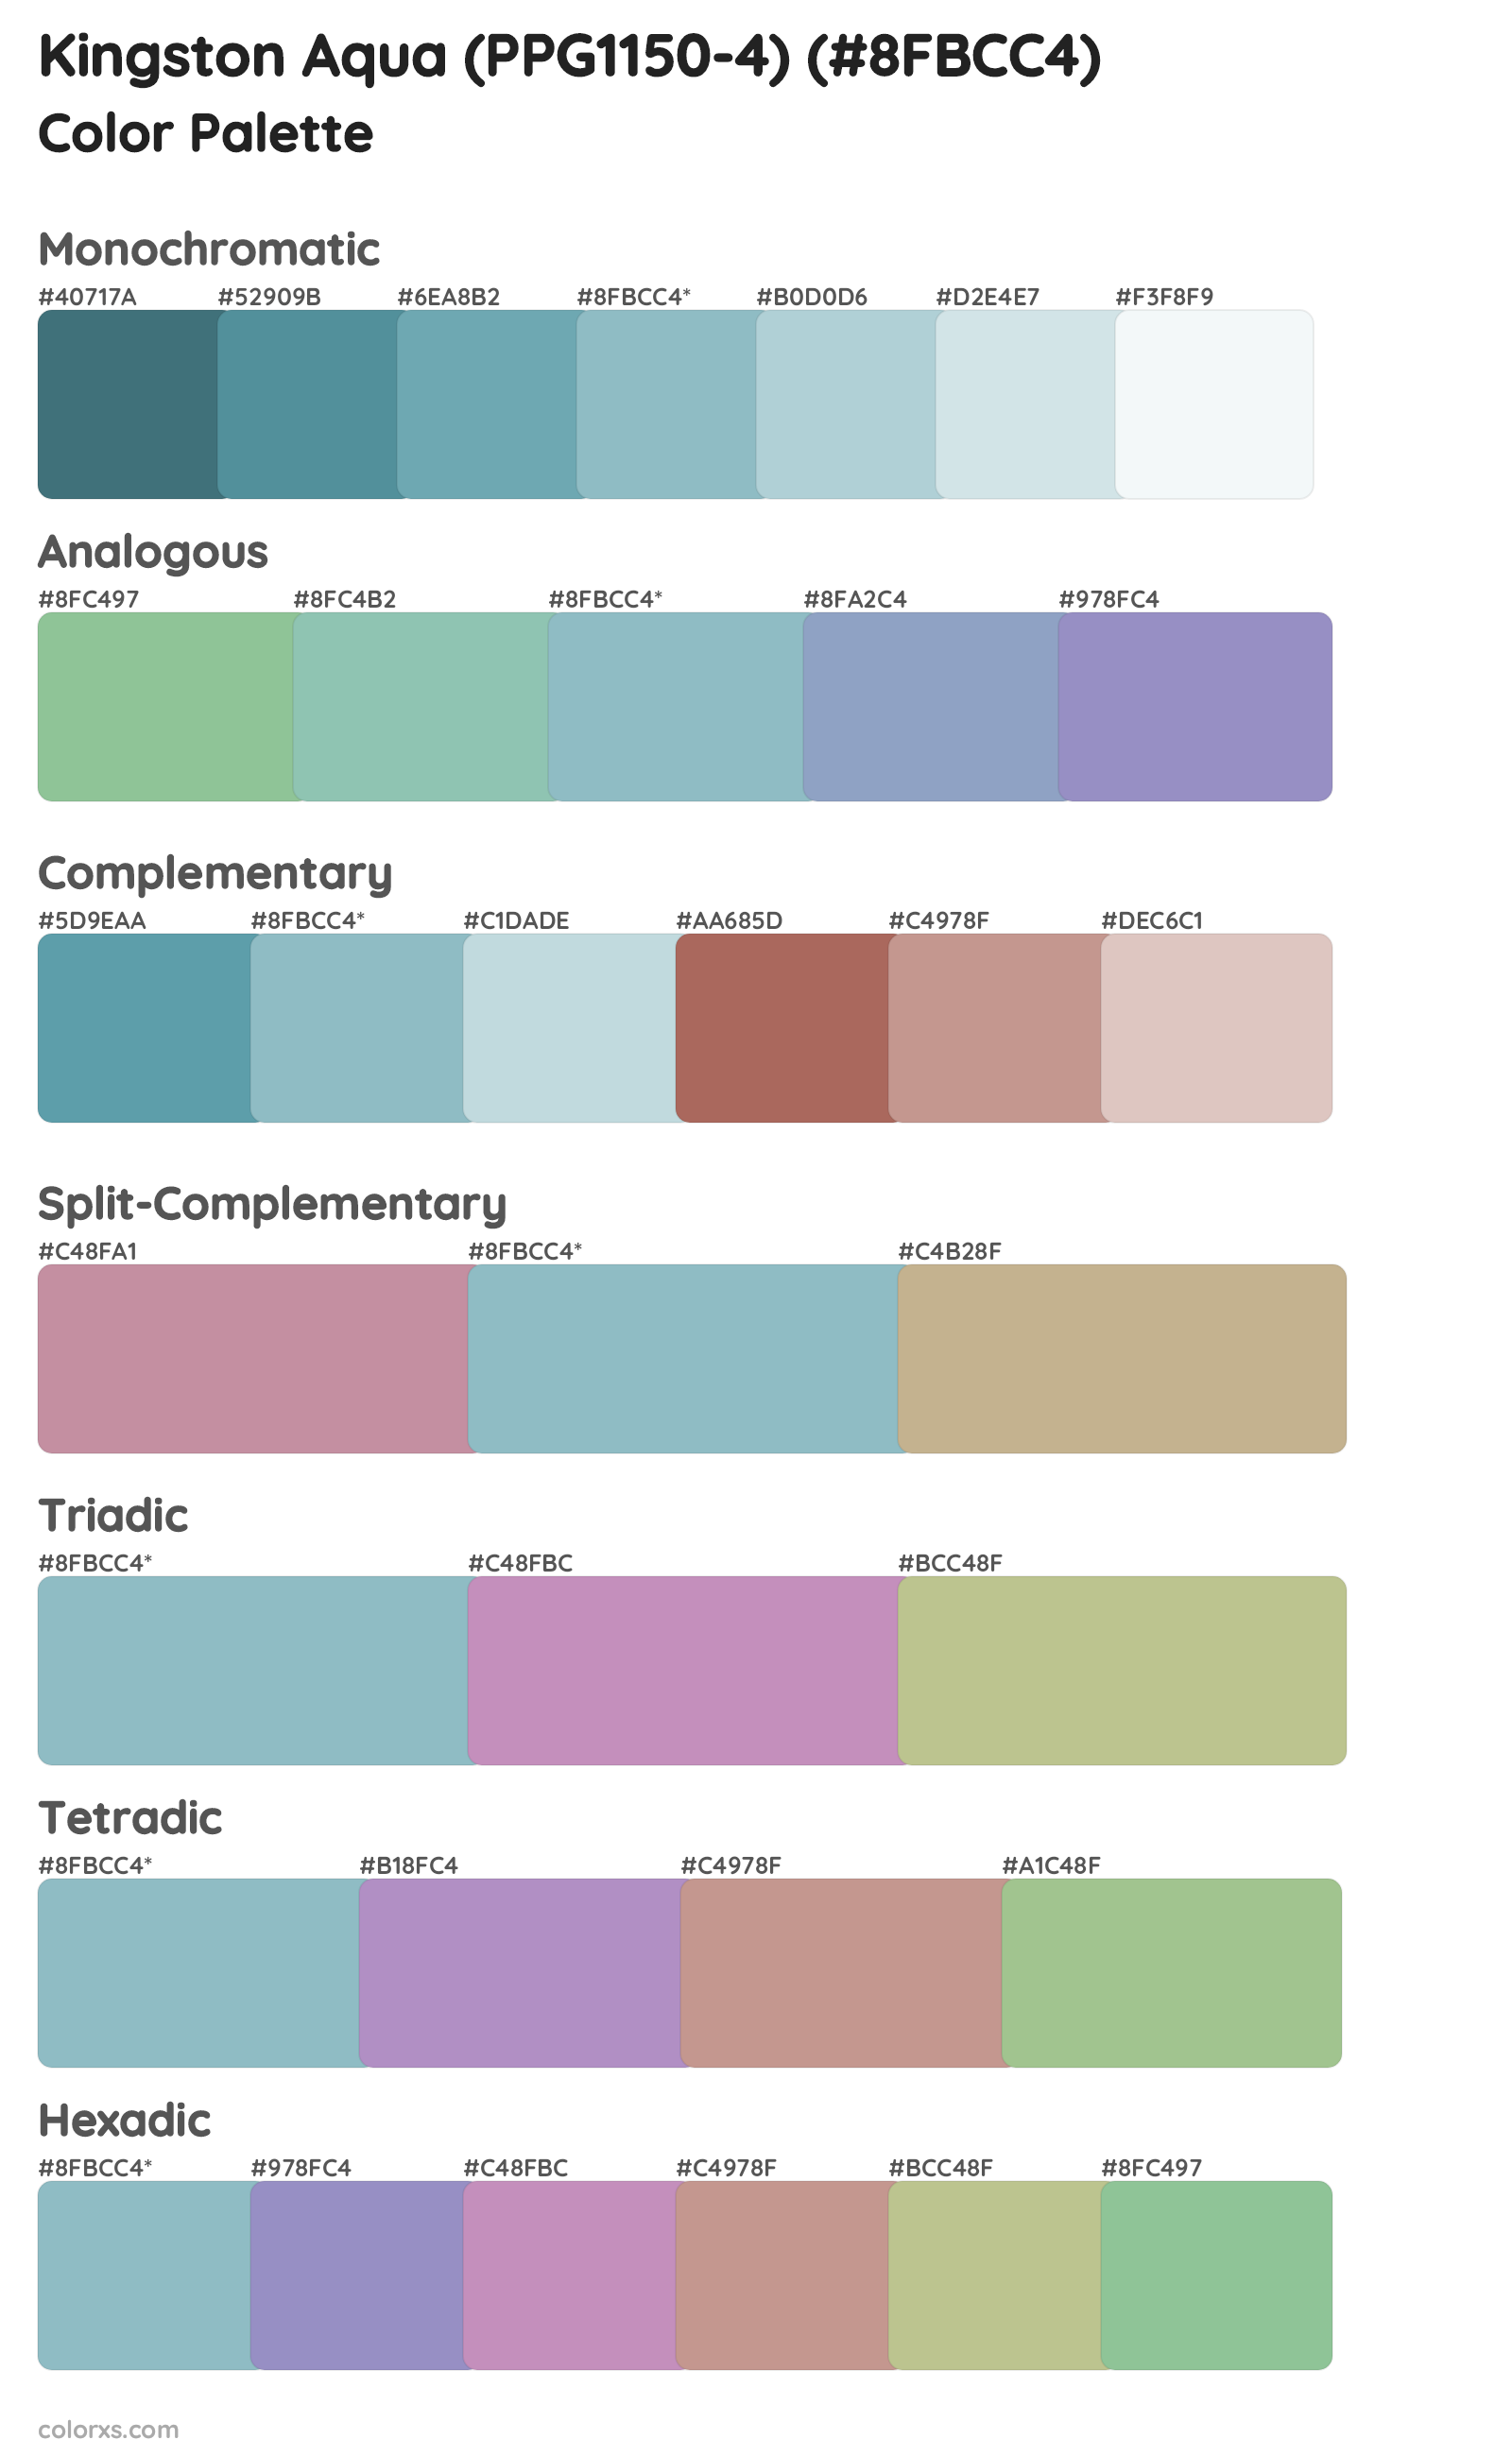 Kingston Aqua (PPG1150-4) Color Scheme Palettes